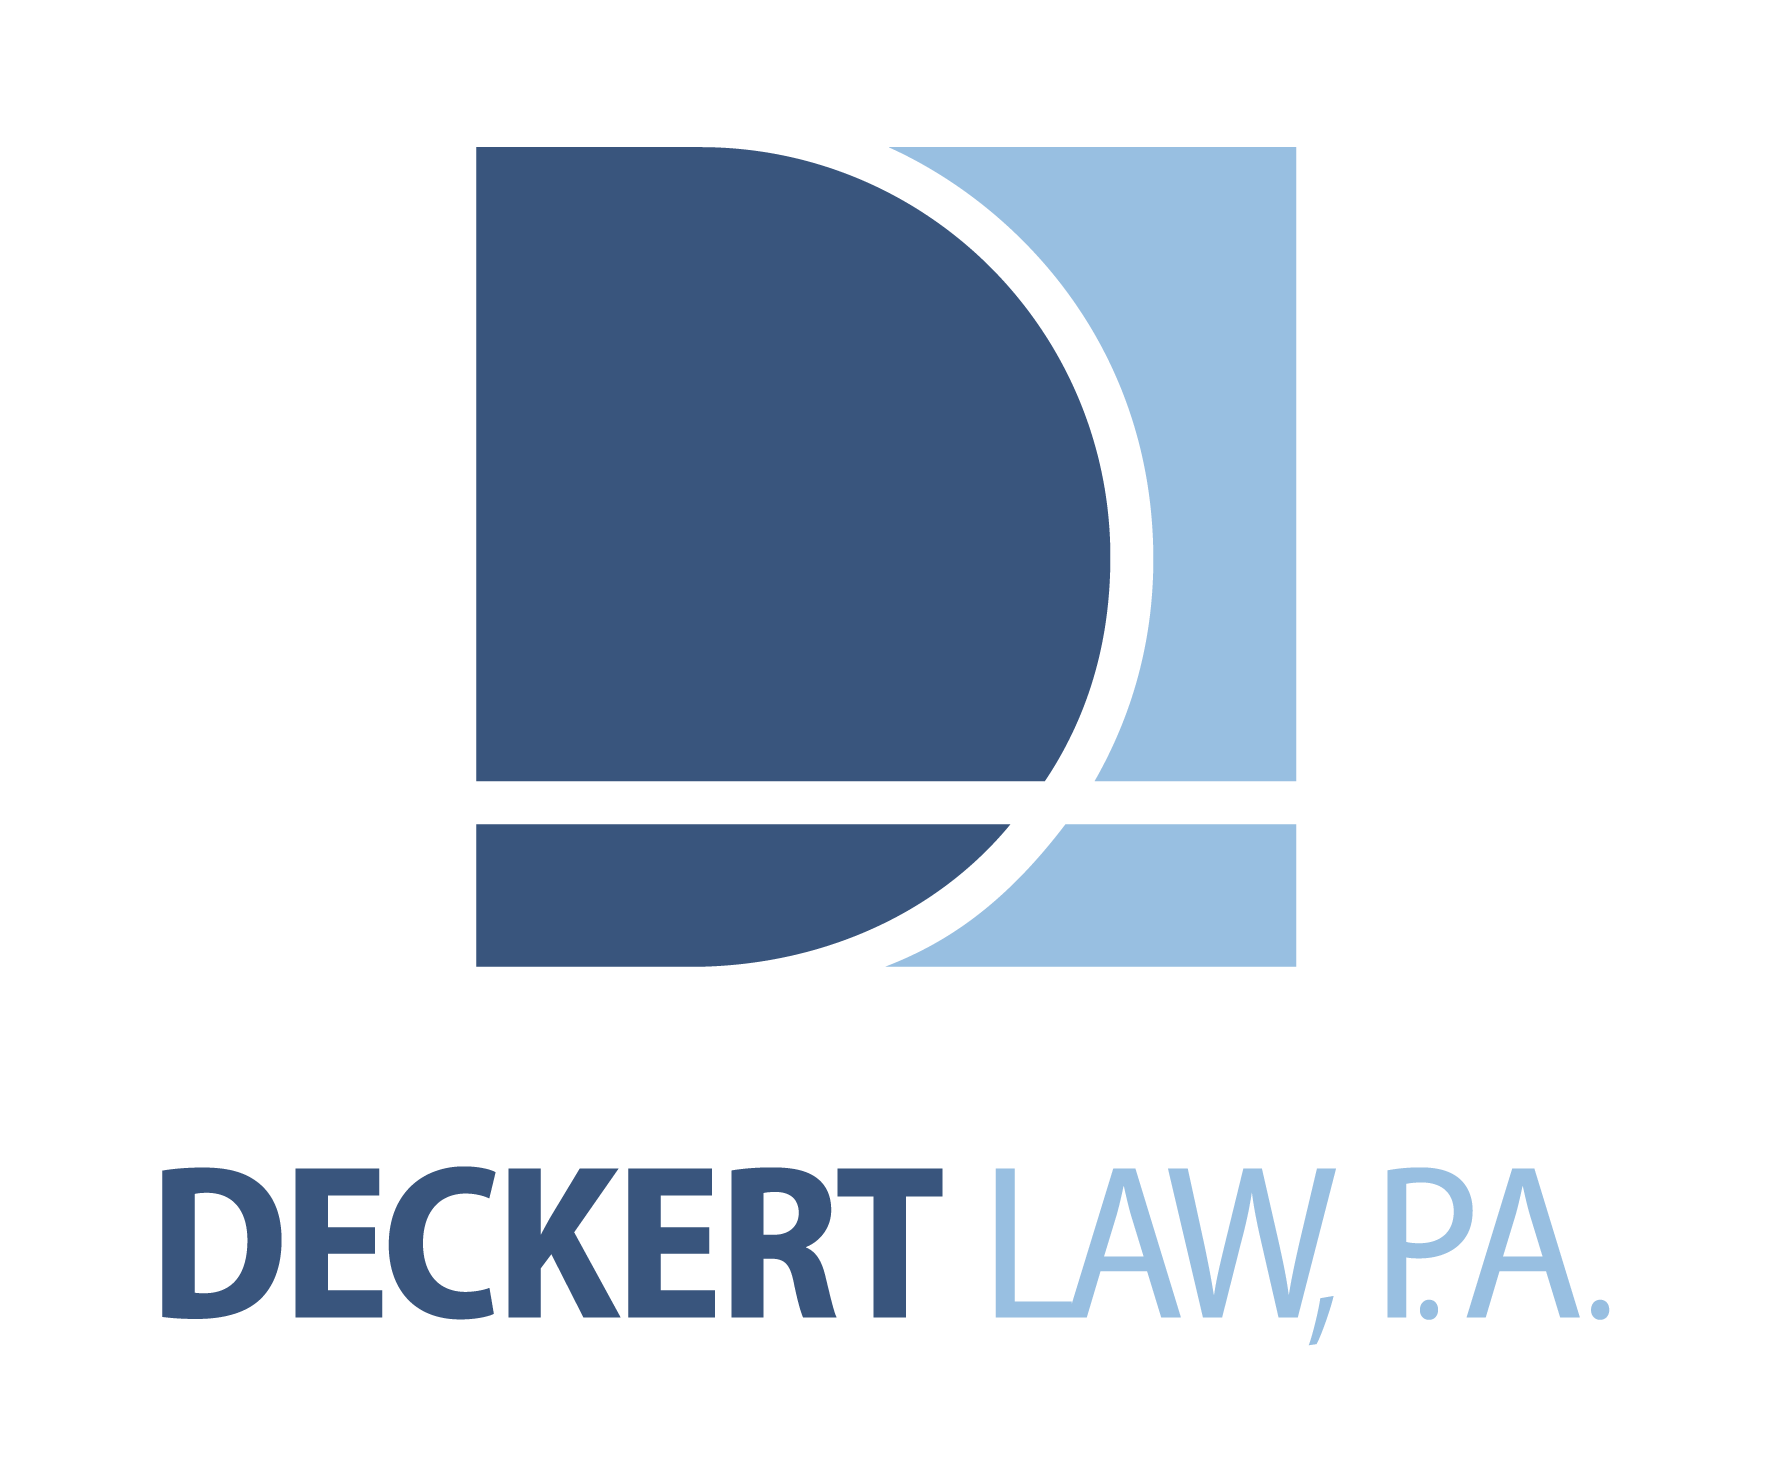 Deckert Law PA